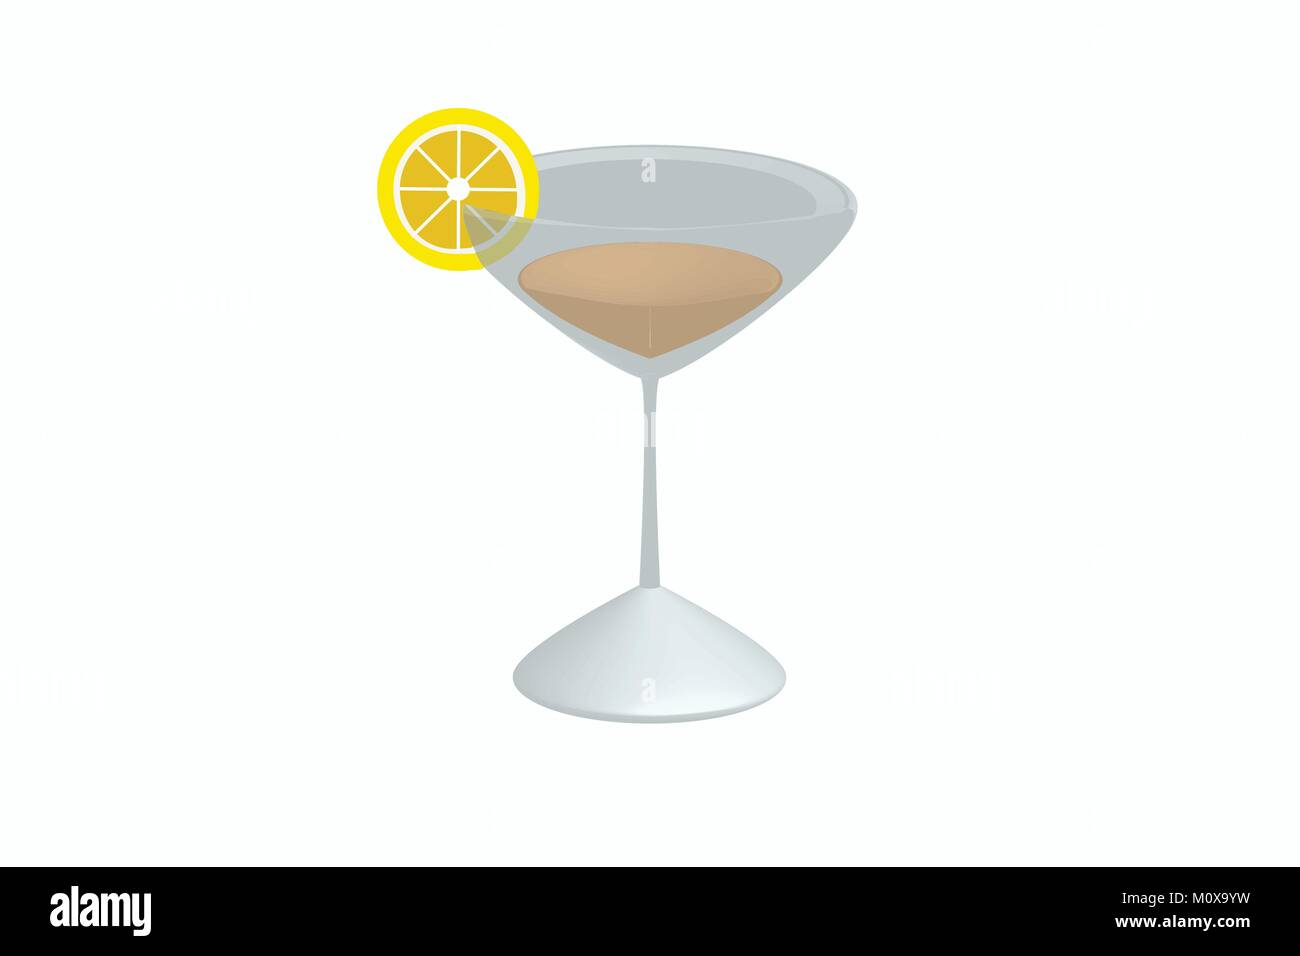 Illustration de cocktail avec tranche de citron sur le verre en 3D, vecteur de boisson alcoolisée dans un verre à martini et une touche de citron sur c/ verre Illustration de Vecteur